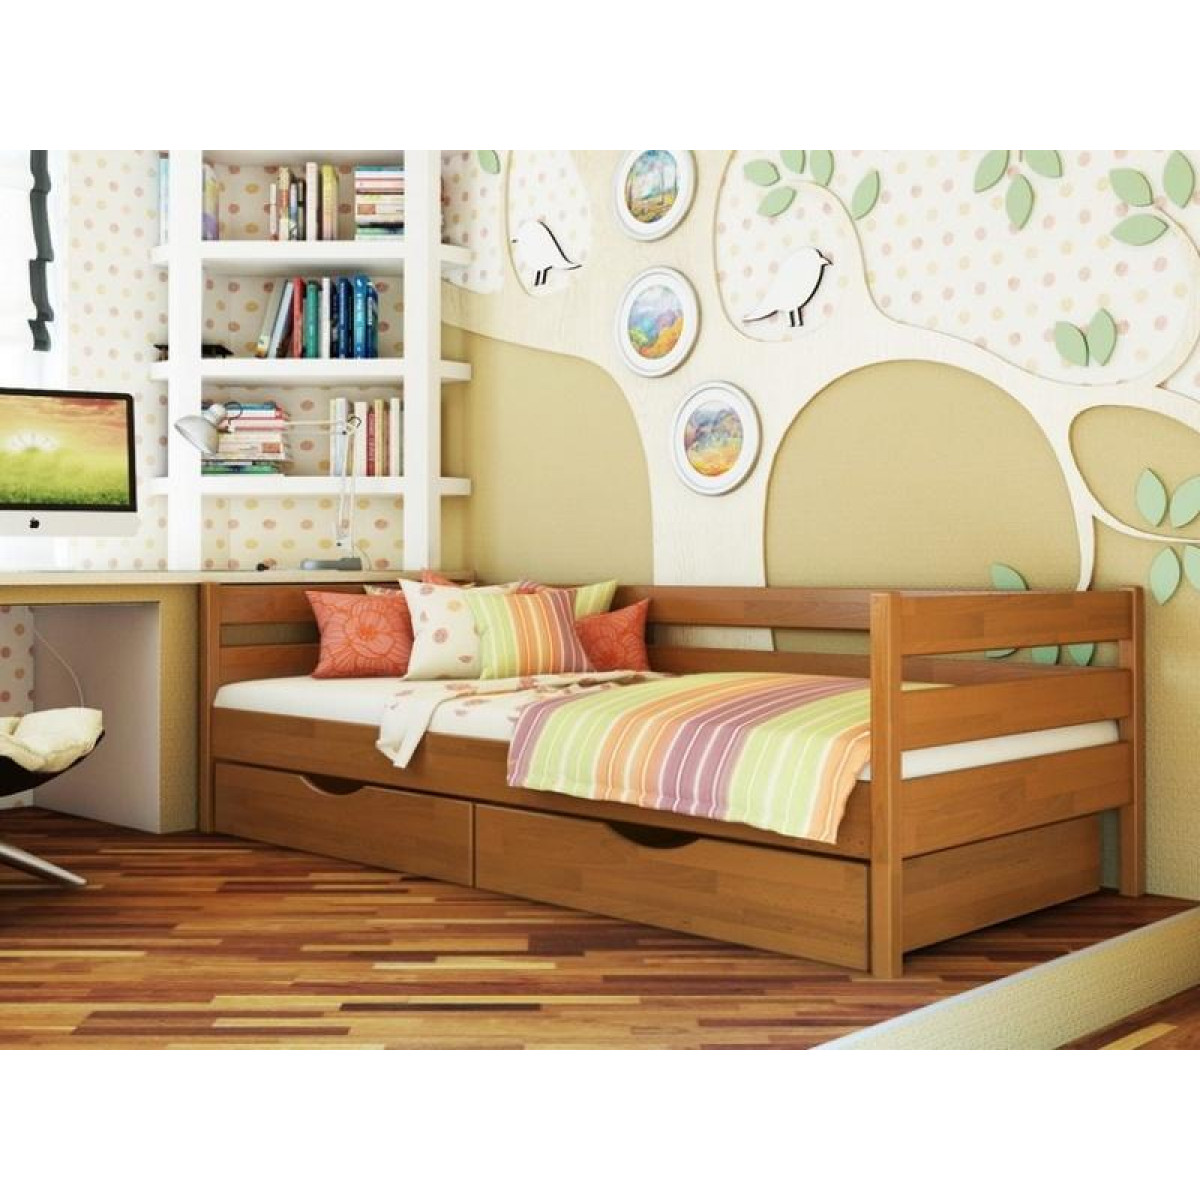 Мебель для подростка девочки: дизайн и ремонт маленькой комнаты для подростка 12-15 лет